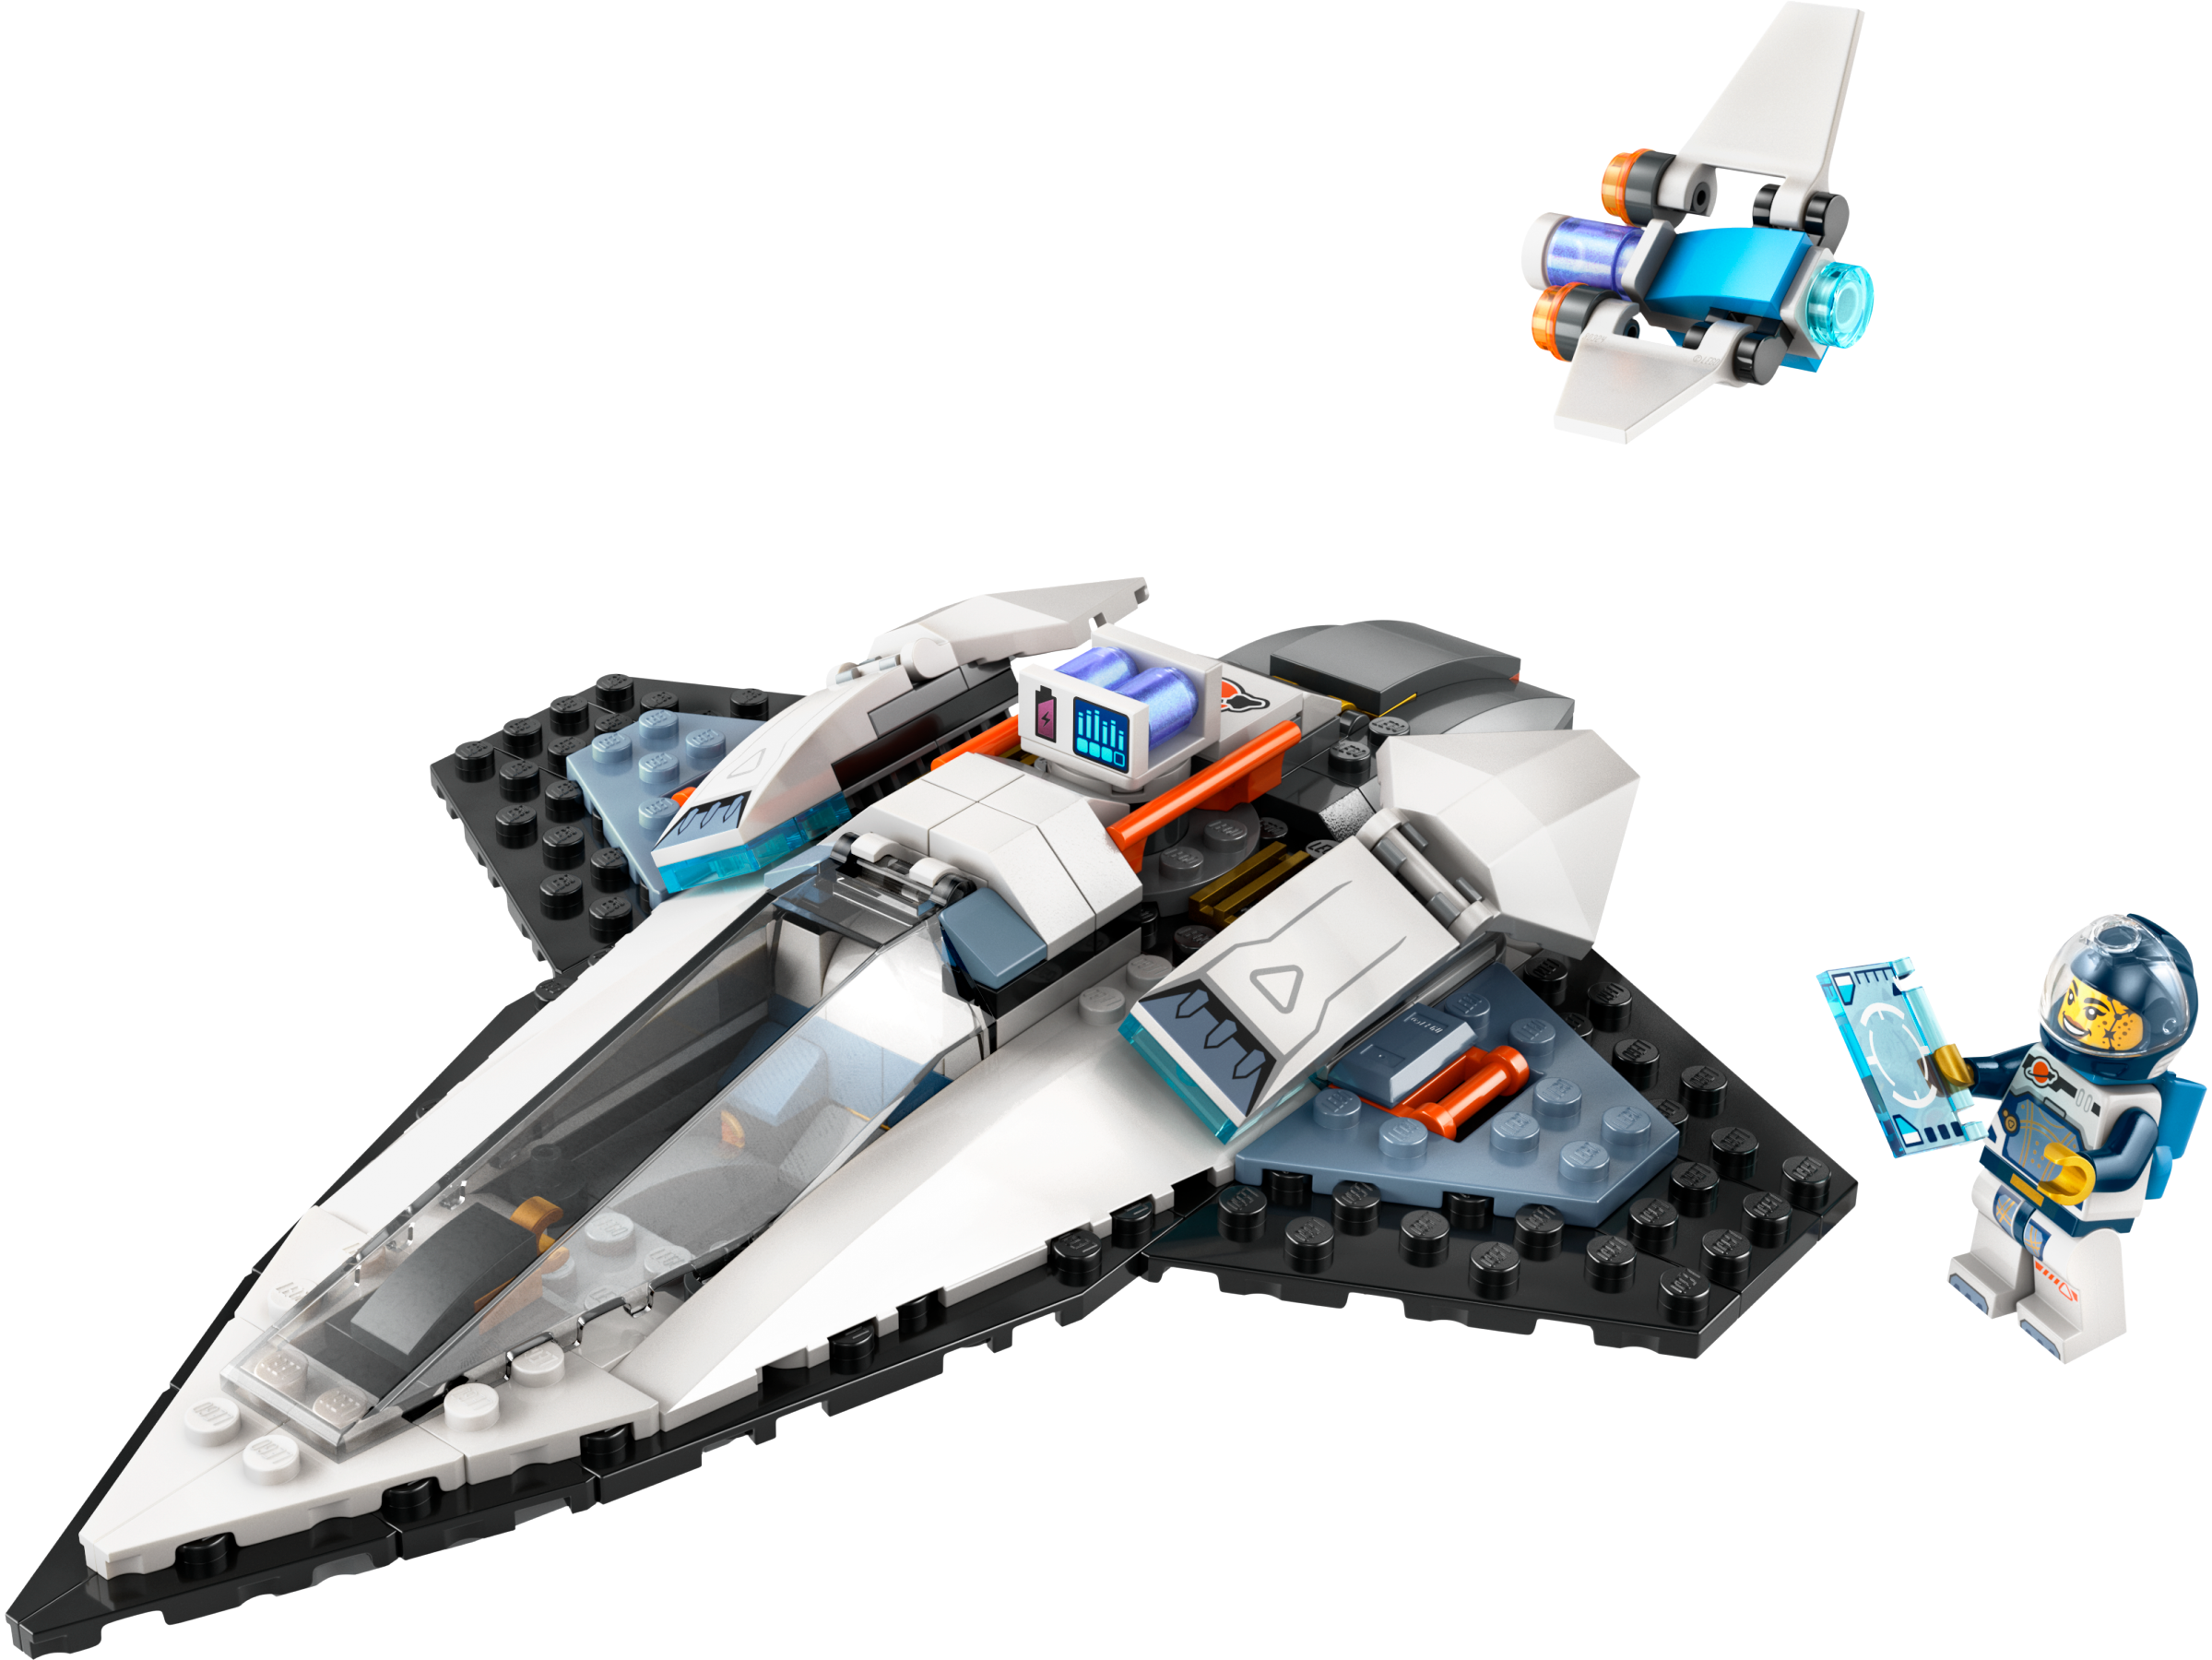 Lego 60430 Interstellar Spaceship